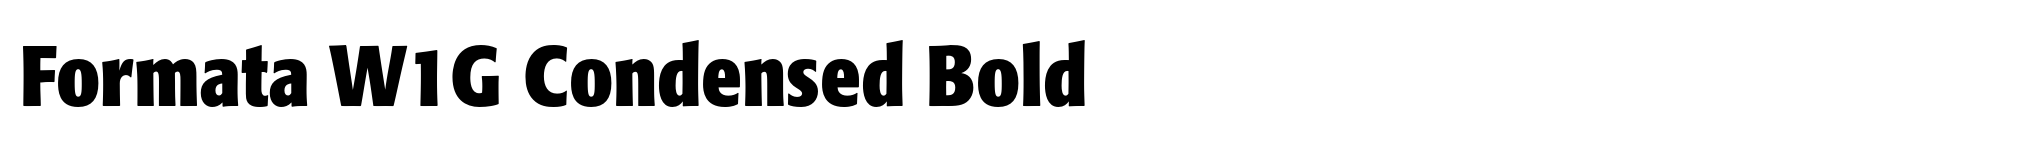 Formata W1G Condensed Bold image